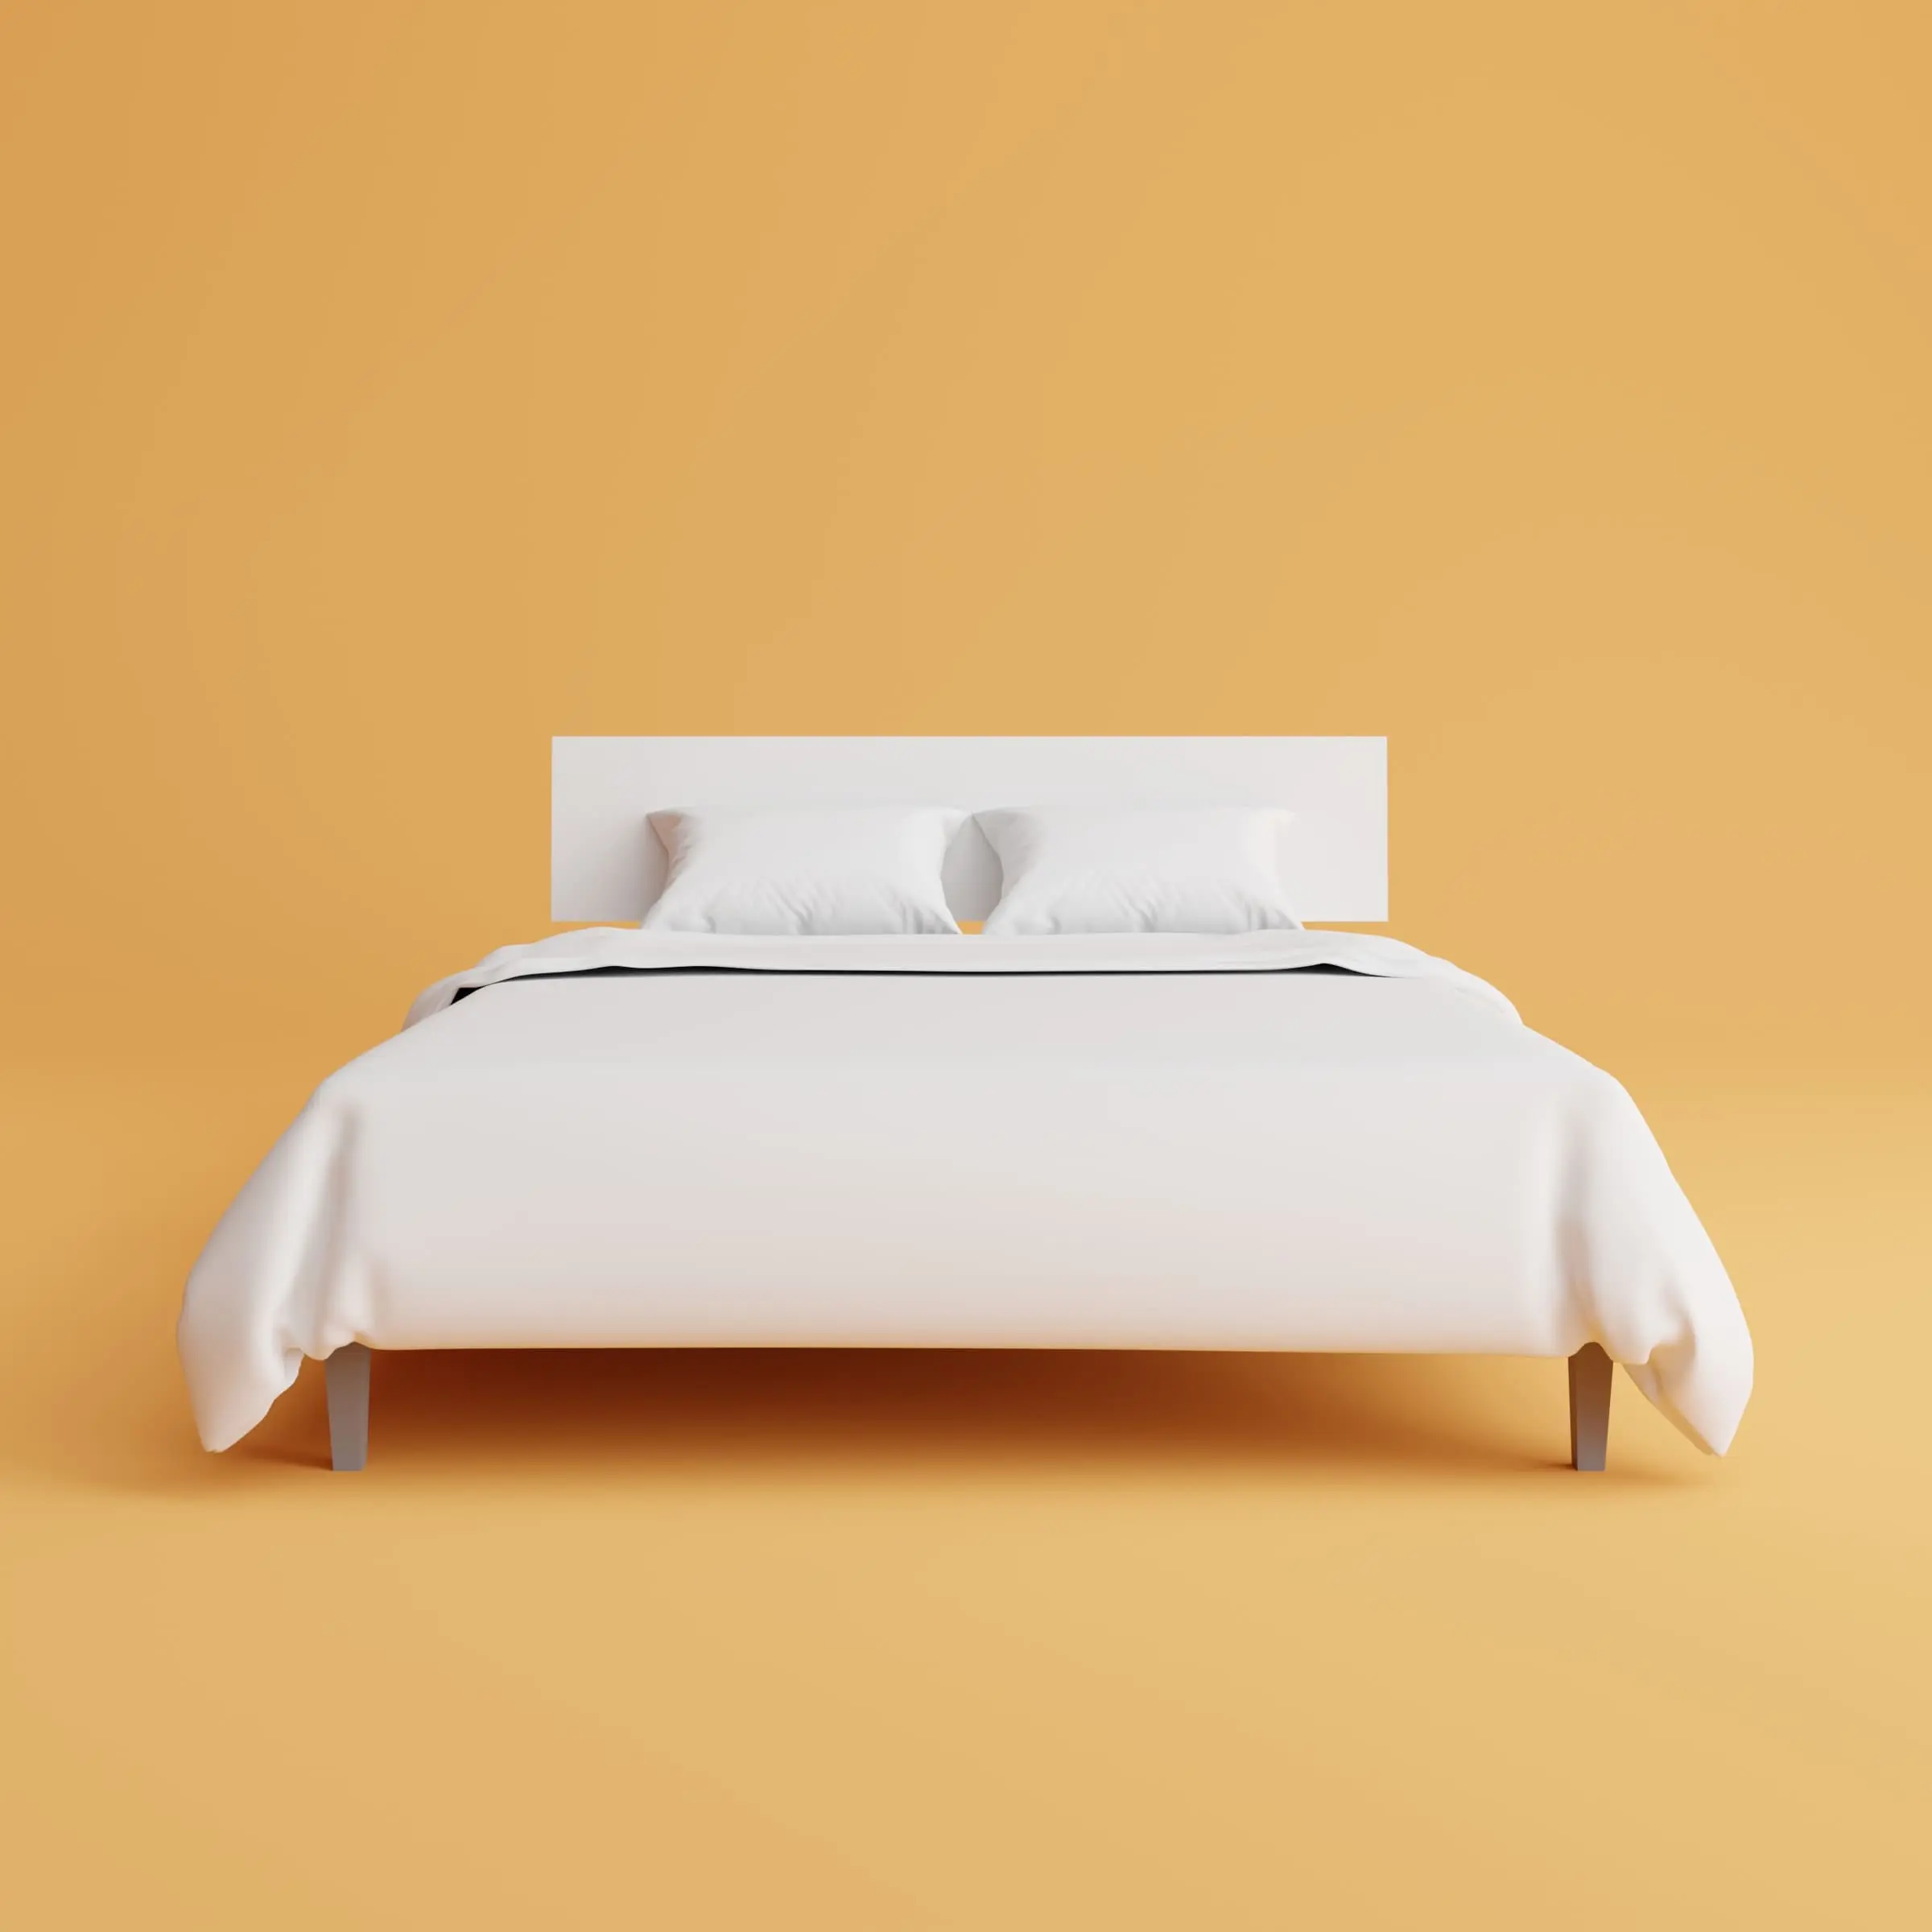 mudanza dormir cama hinchable - Qué tan comodo es un colchón inflable